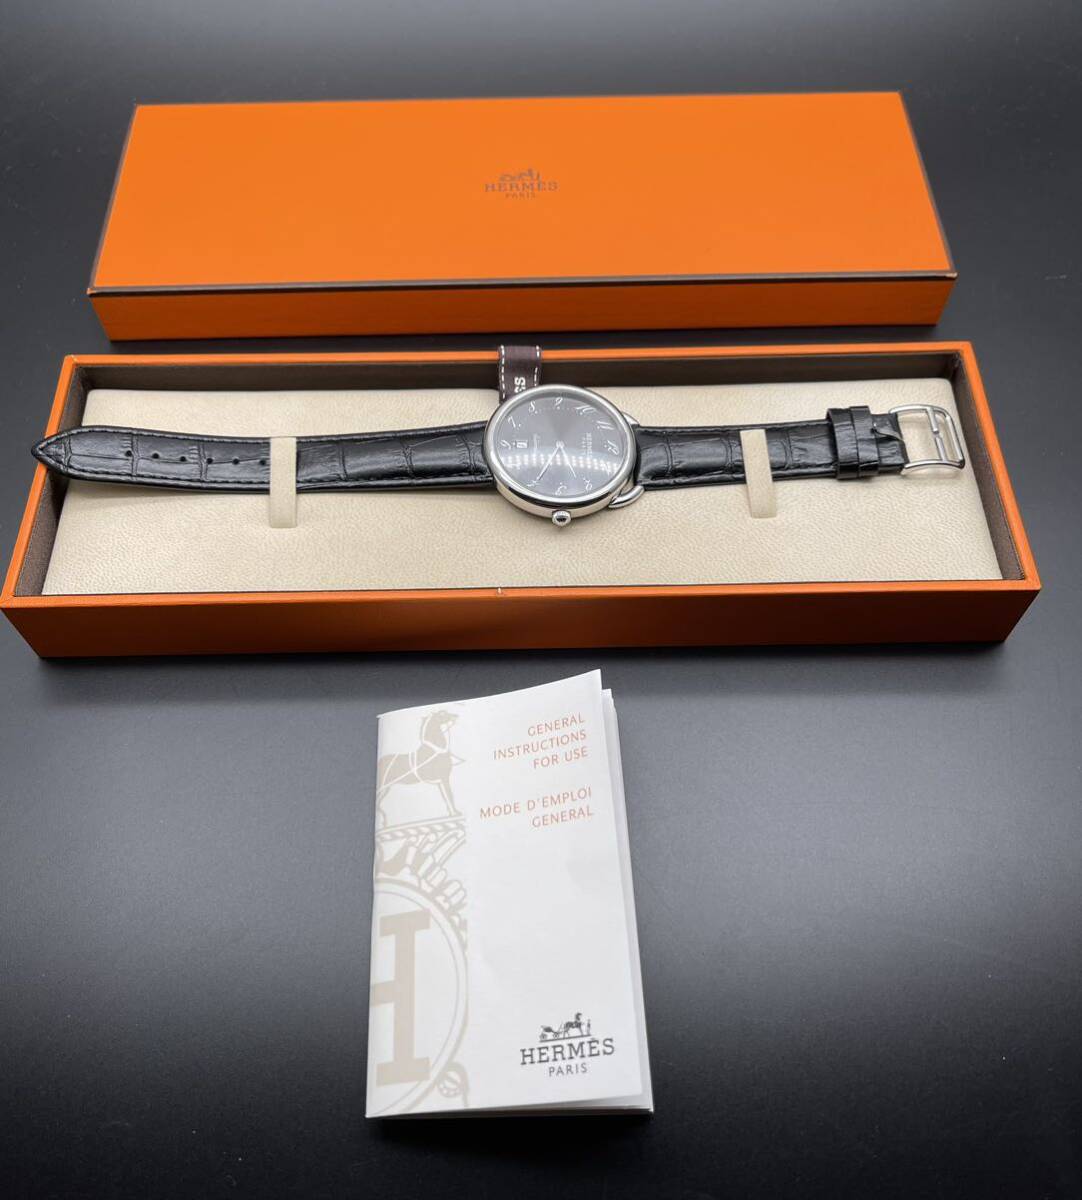 中古 箱あり エルメス HERMES アルソー AR4.810 デイト ステンレス SS グレー文字盤 自動巻き メンズ 腕時計